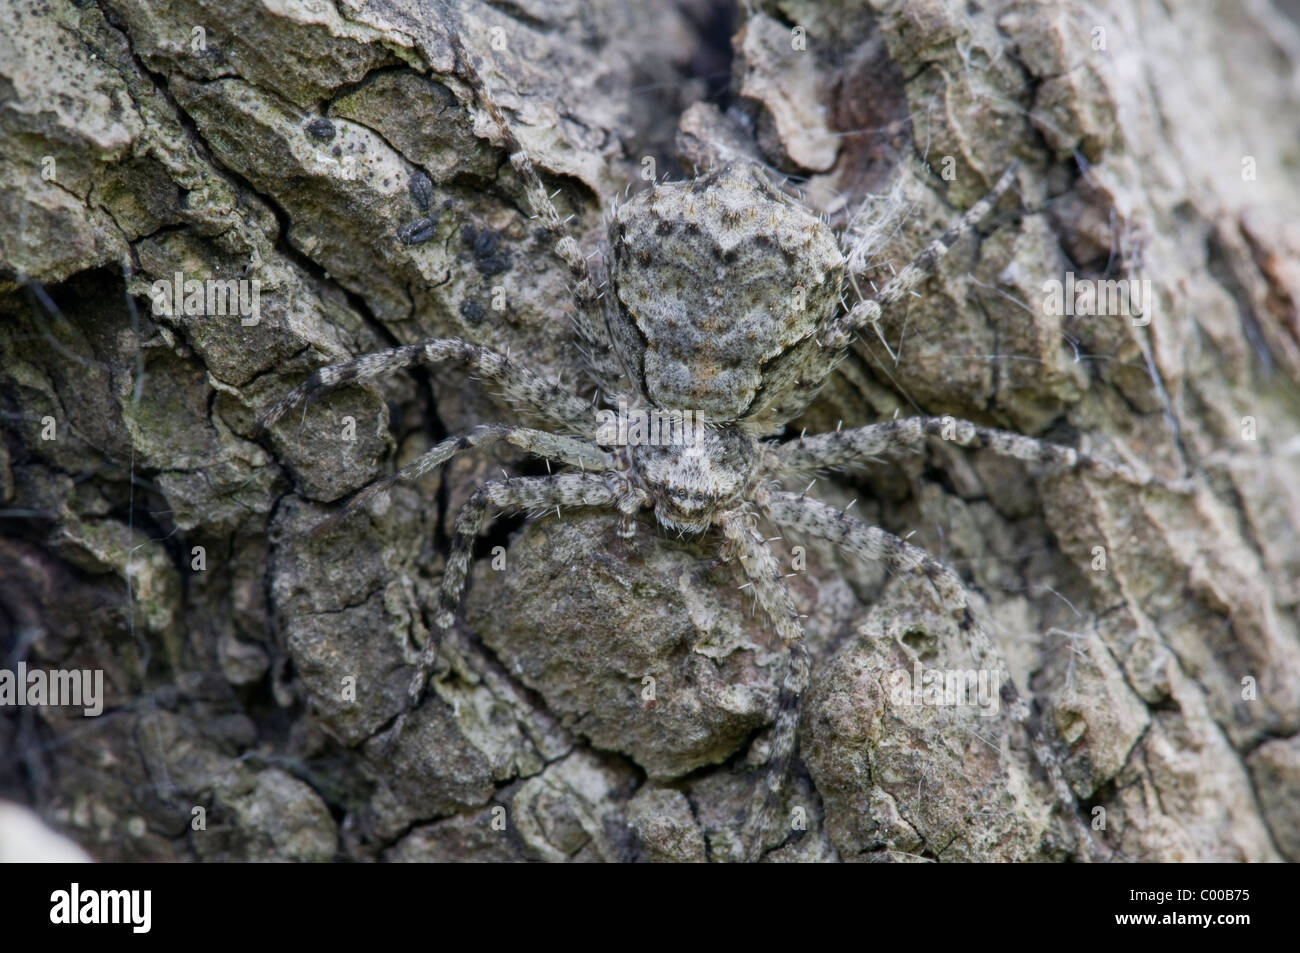 Getarnte Spinne auf Eichenrinde, camouflaged spider, oak, bark, Tokaj, Ungarn, Hungary Stock Photo